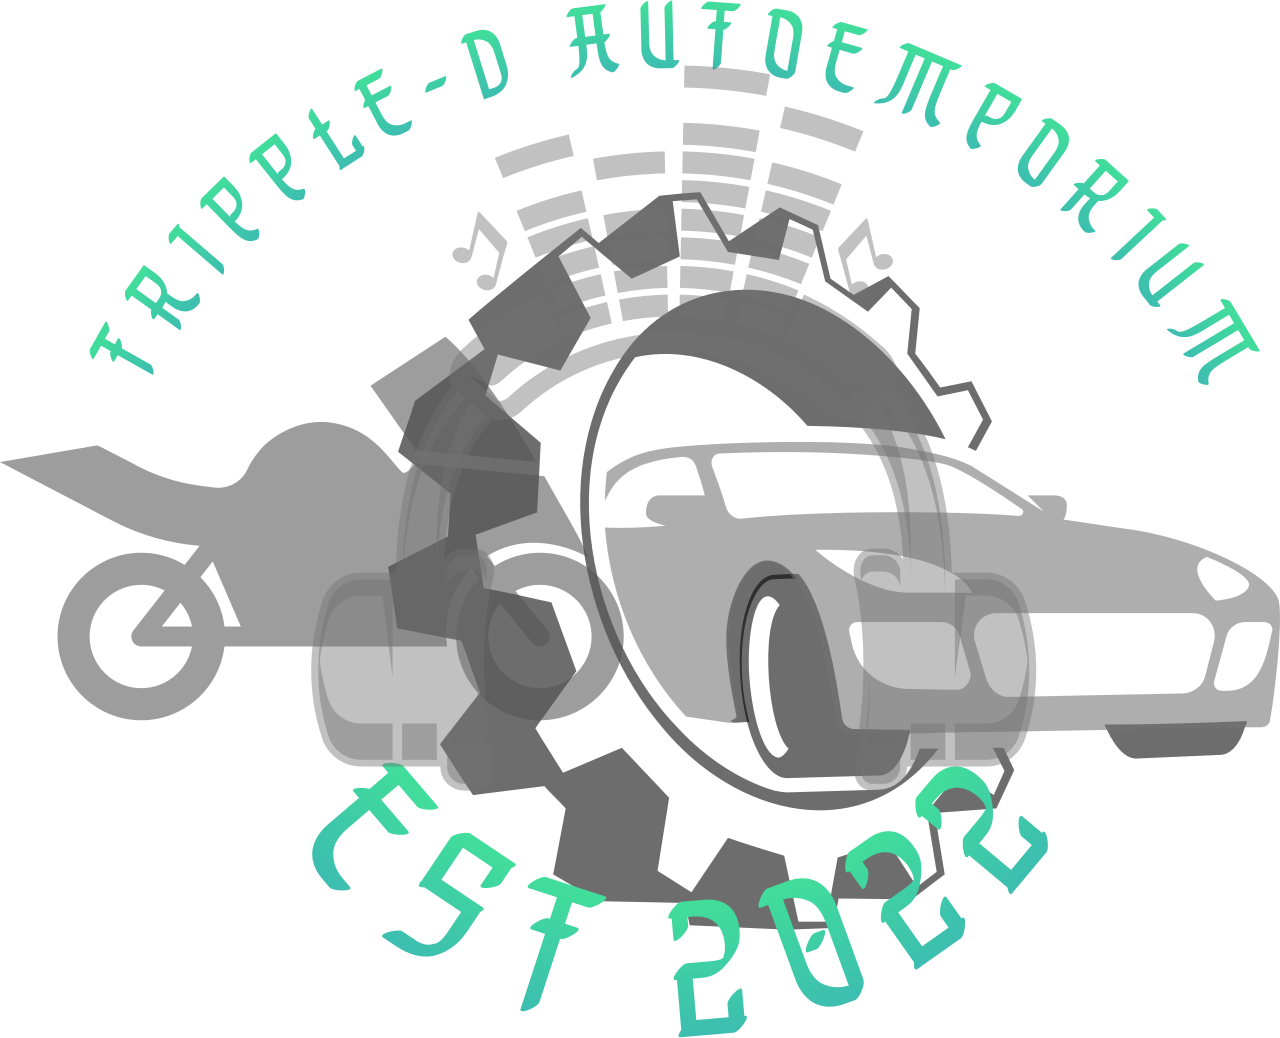 TRIPPLE-D AUTOEMPORIUM's web page